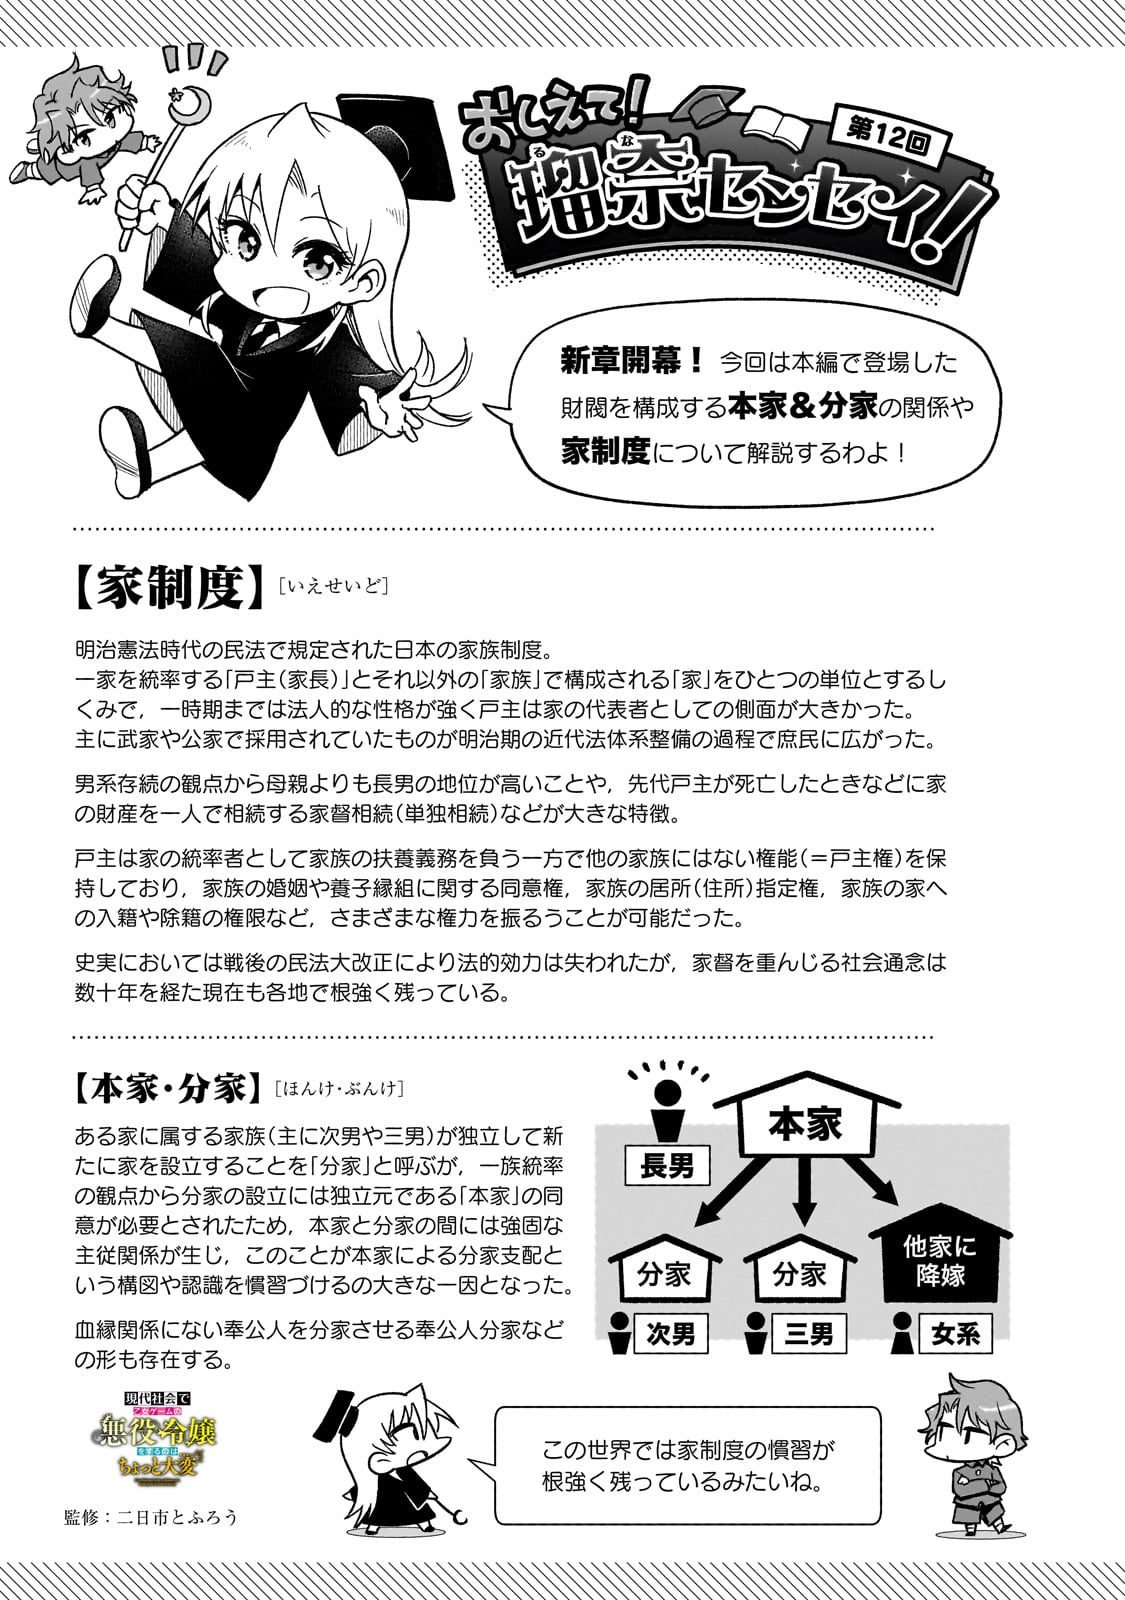 Gendai Shakai de Otome Game no Akuyaku Reijou wo suru no wa Chotto Taihen - Chapter 12 - Page 23